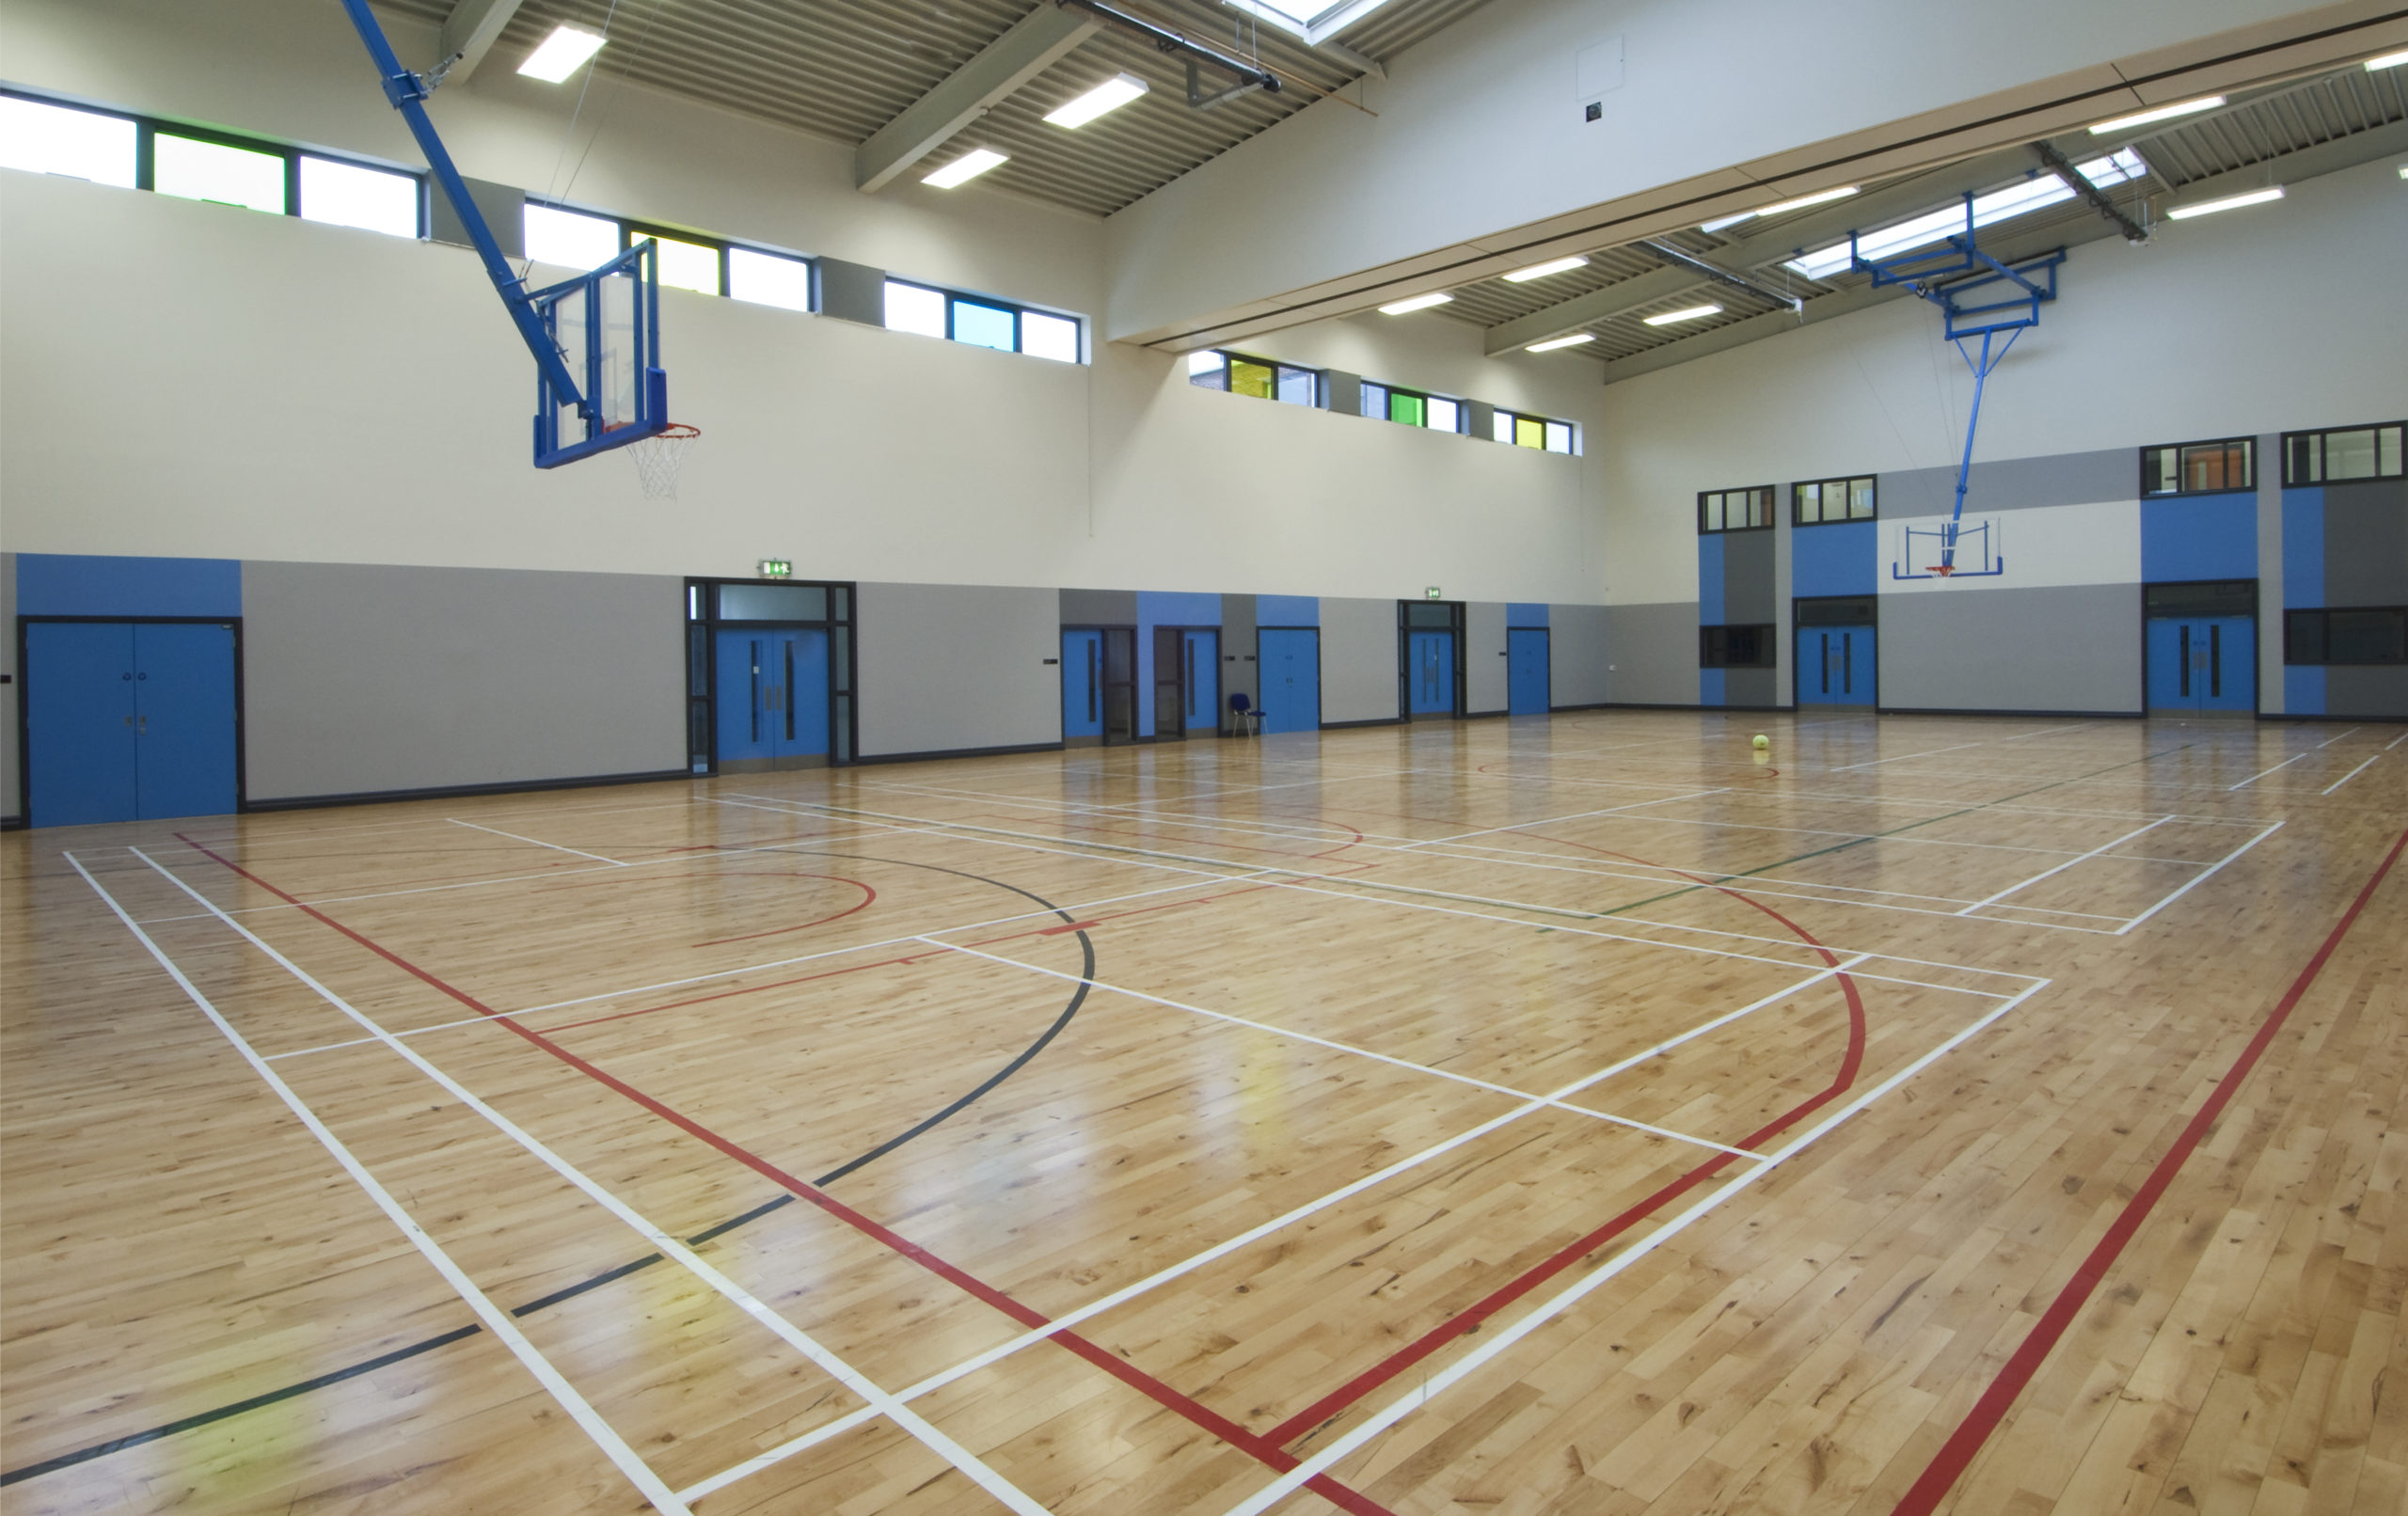 Guidances Changes on Spectators at Indoor School Events